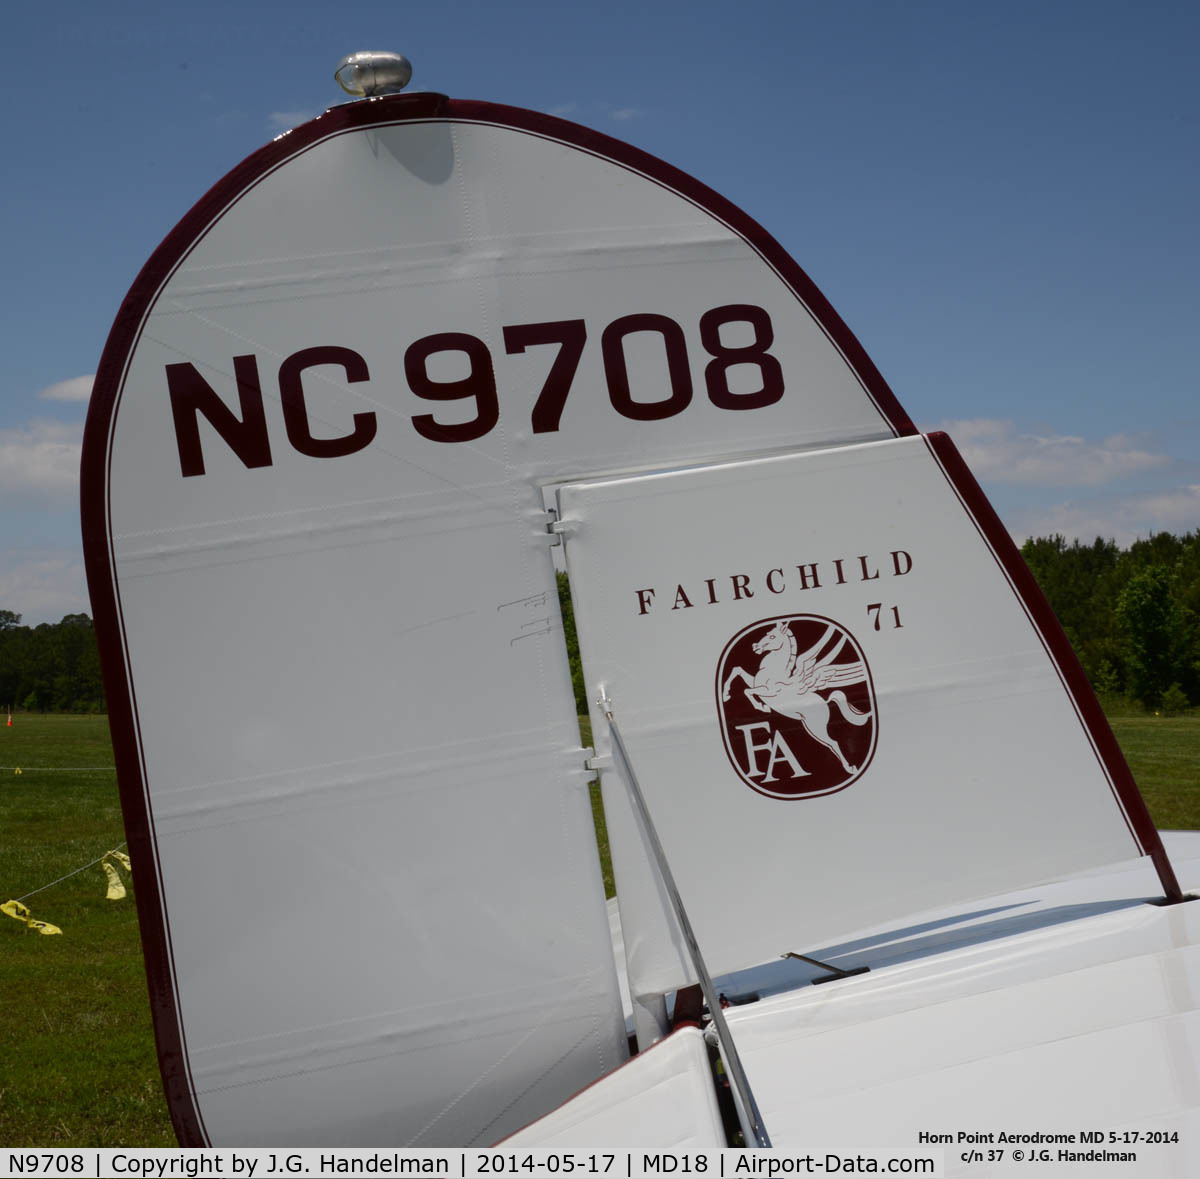 N9708, Fairchild 71 C/N 37, Tail image of restored 1929 Fairchild 71.